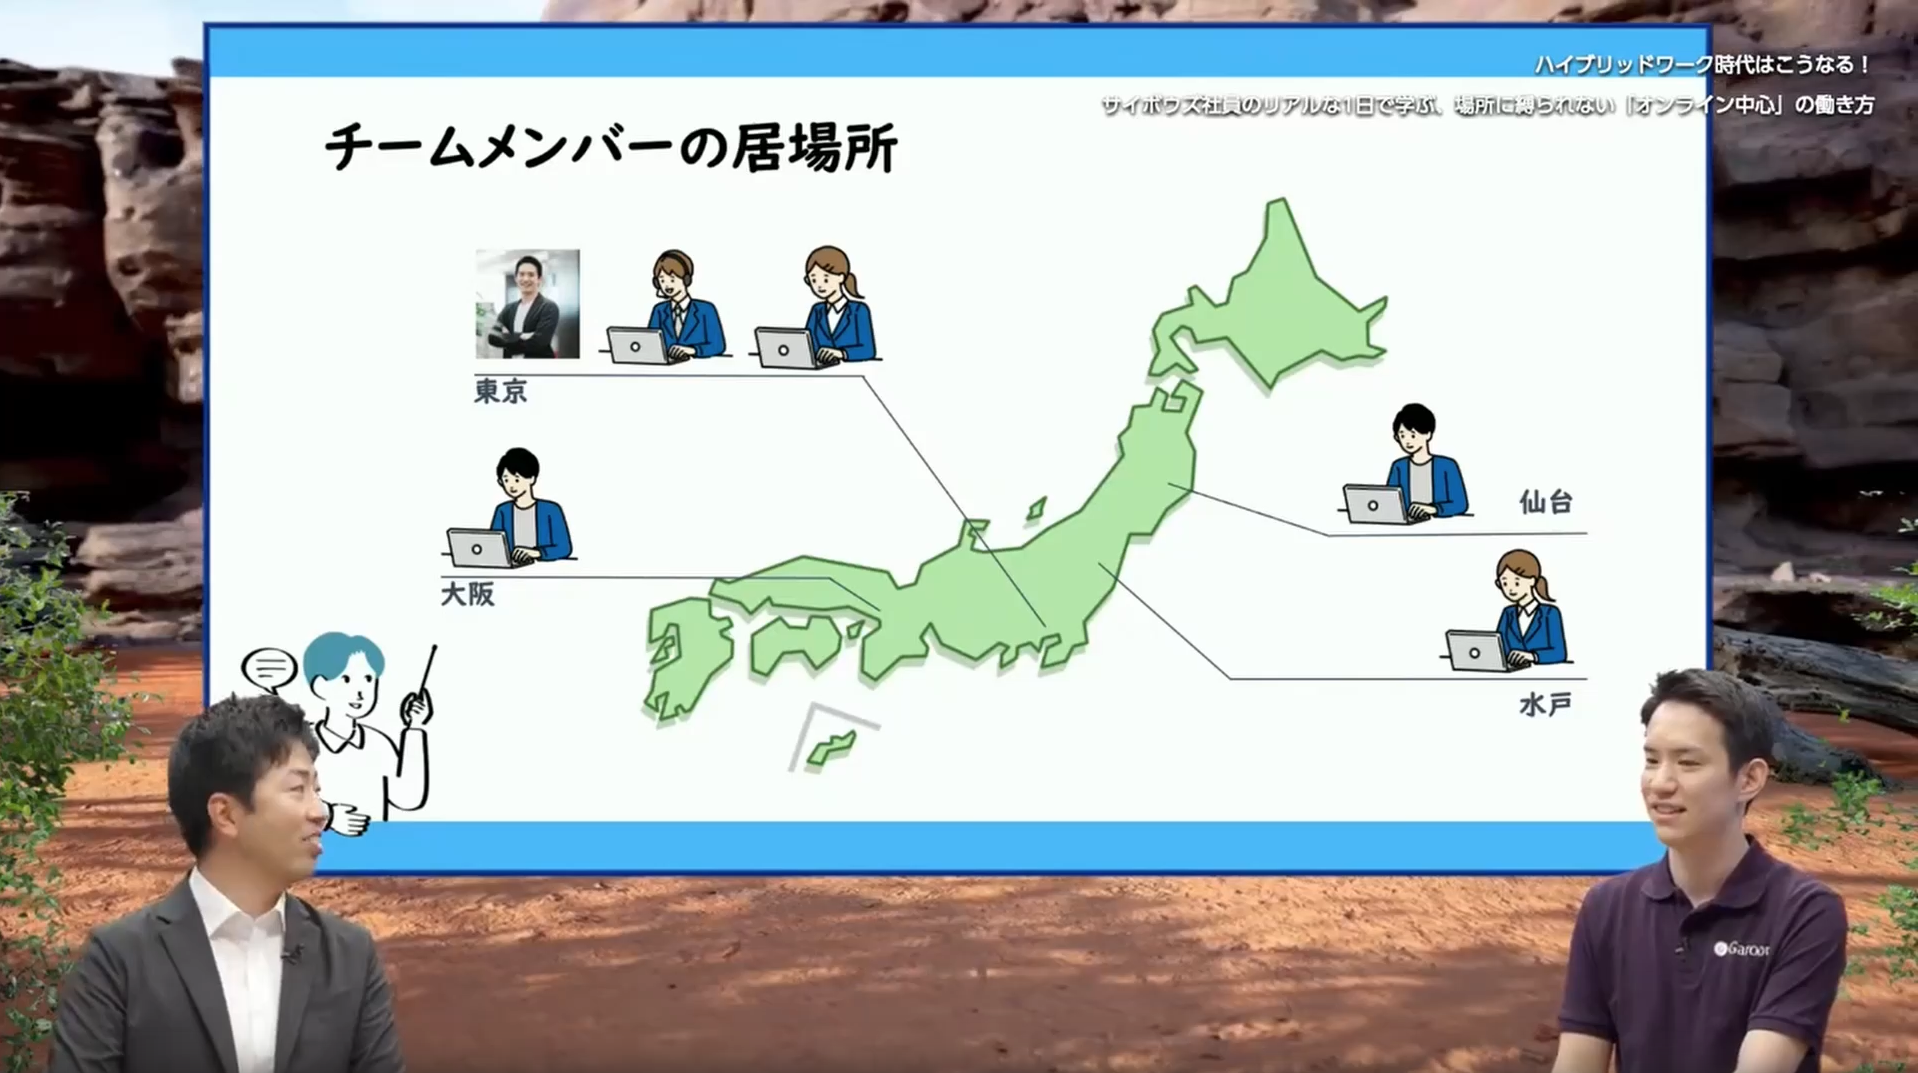 日本各地にメンバーがいる図(東京、大阪、水戸、仙台)